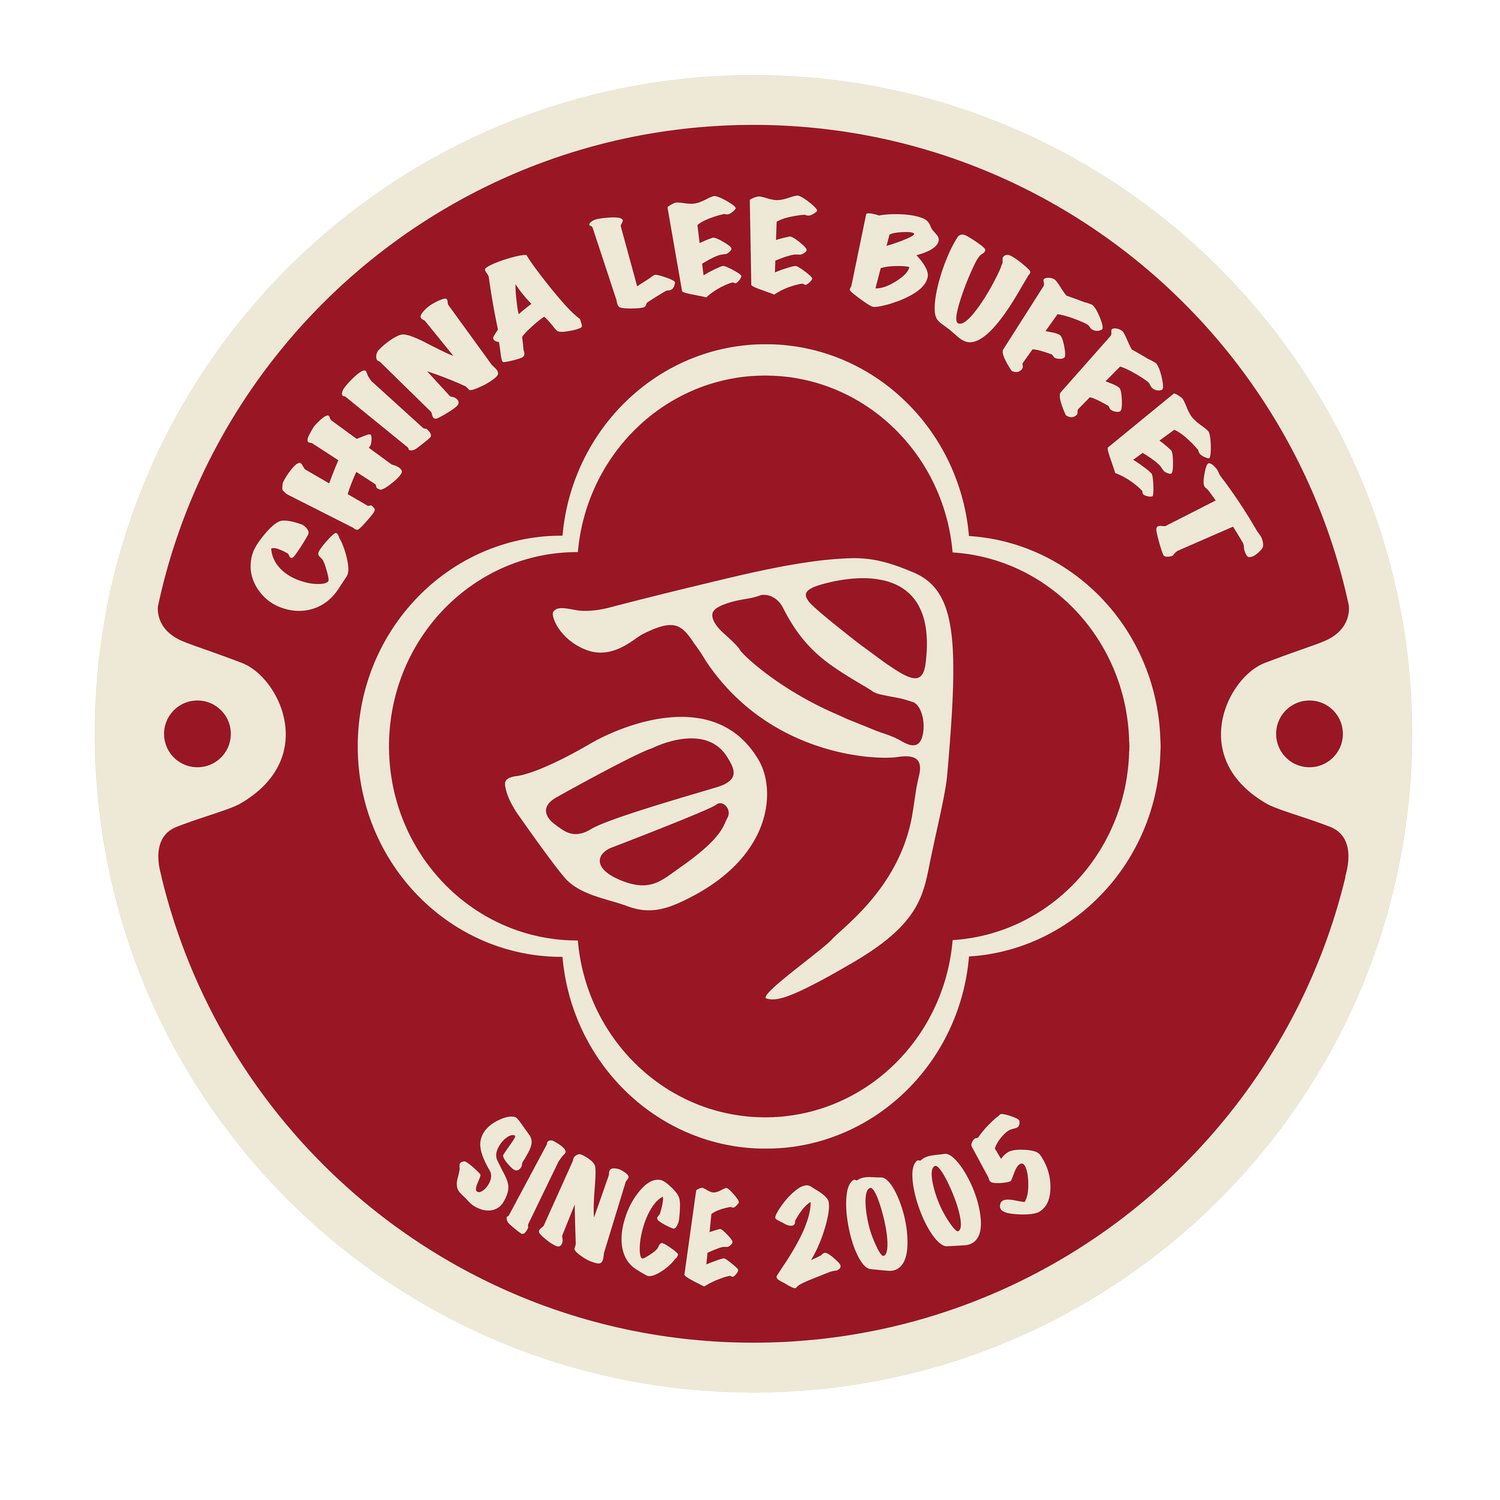 China Lee Buffet 